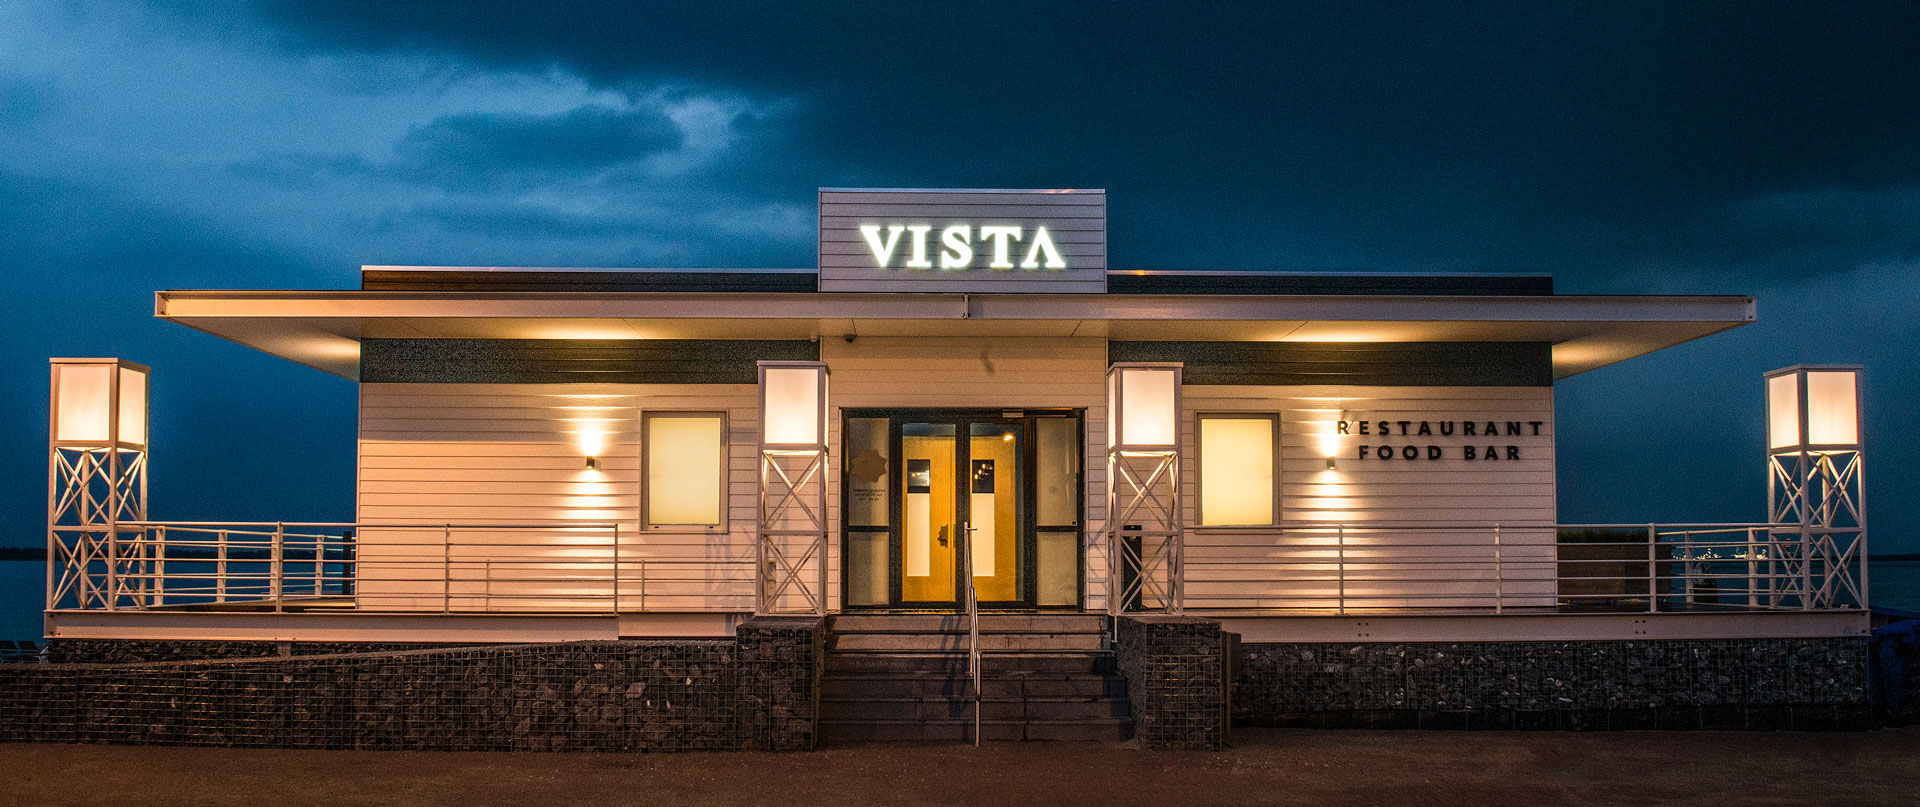 Restaurant VISTA Willemstad